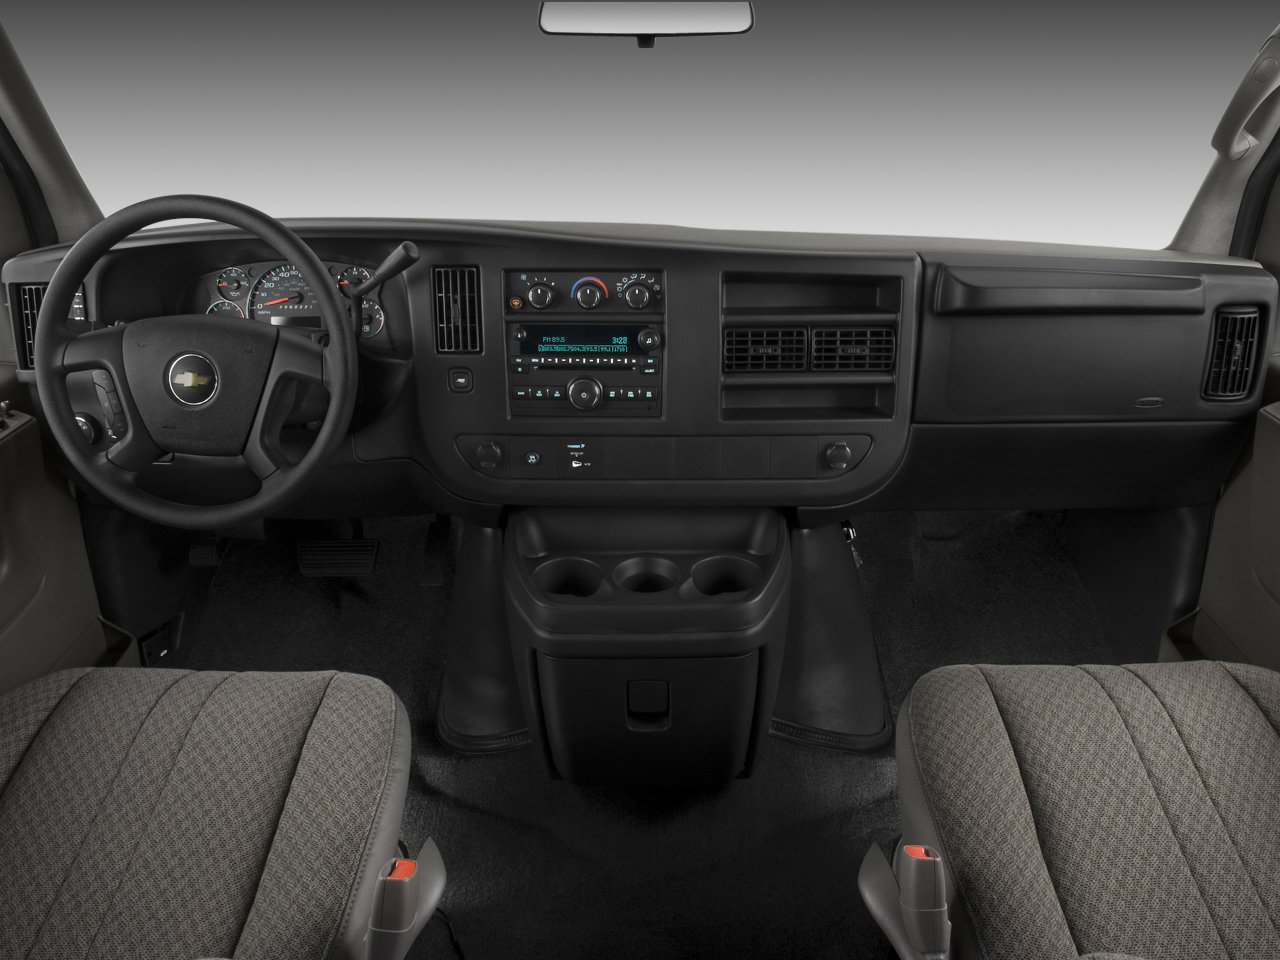 Chevrolet Express Passenger Van LS1500 AWD